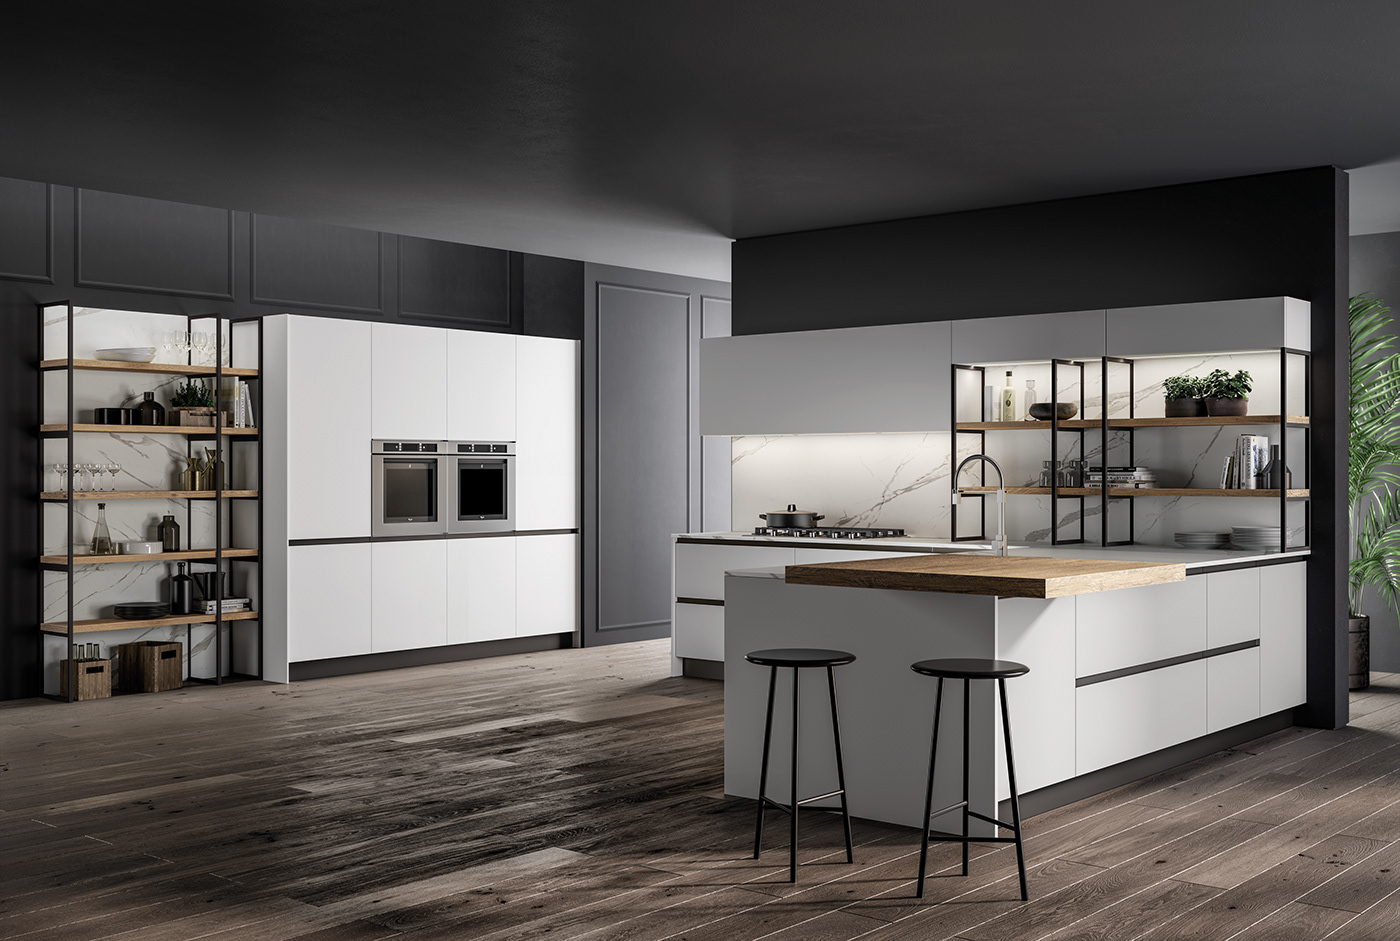 kitchen design inspiration inspiration 2019 Interior modern kitchen new 2019 design 2019